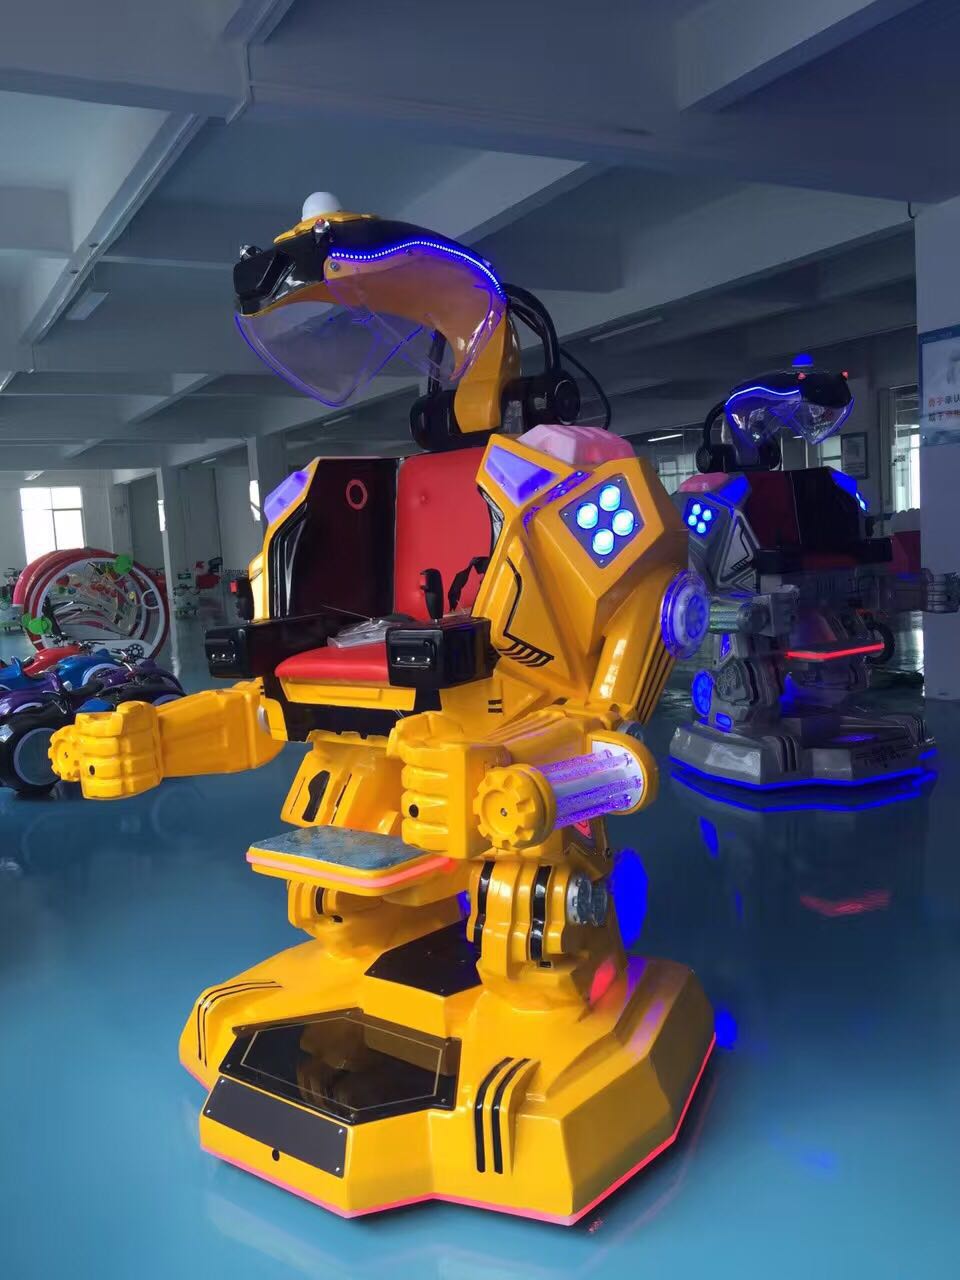 2016最新款广场钢铁侠站立行走机器人电瓶车电动车游乐电玩设备图片